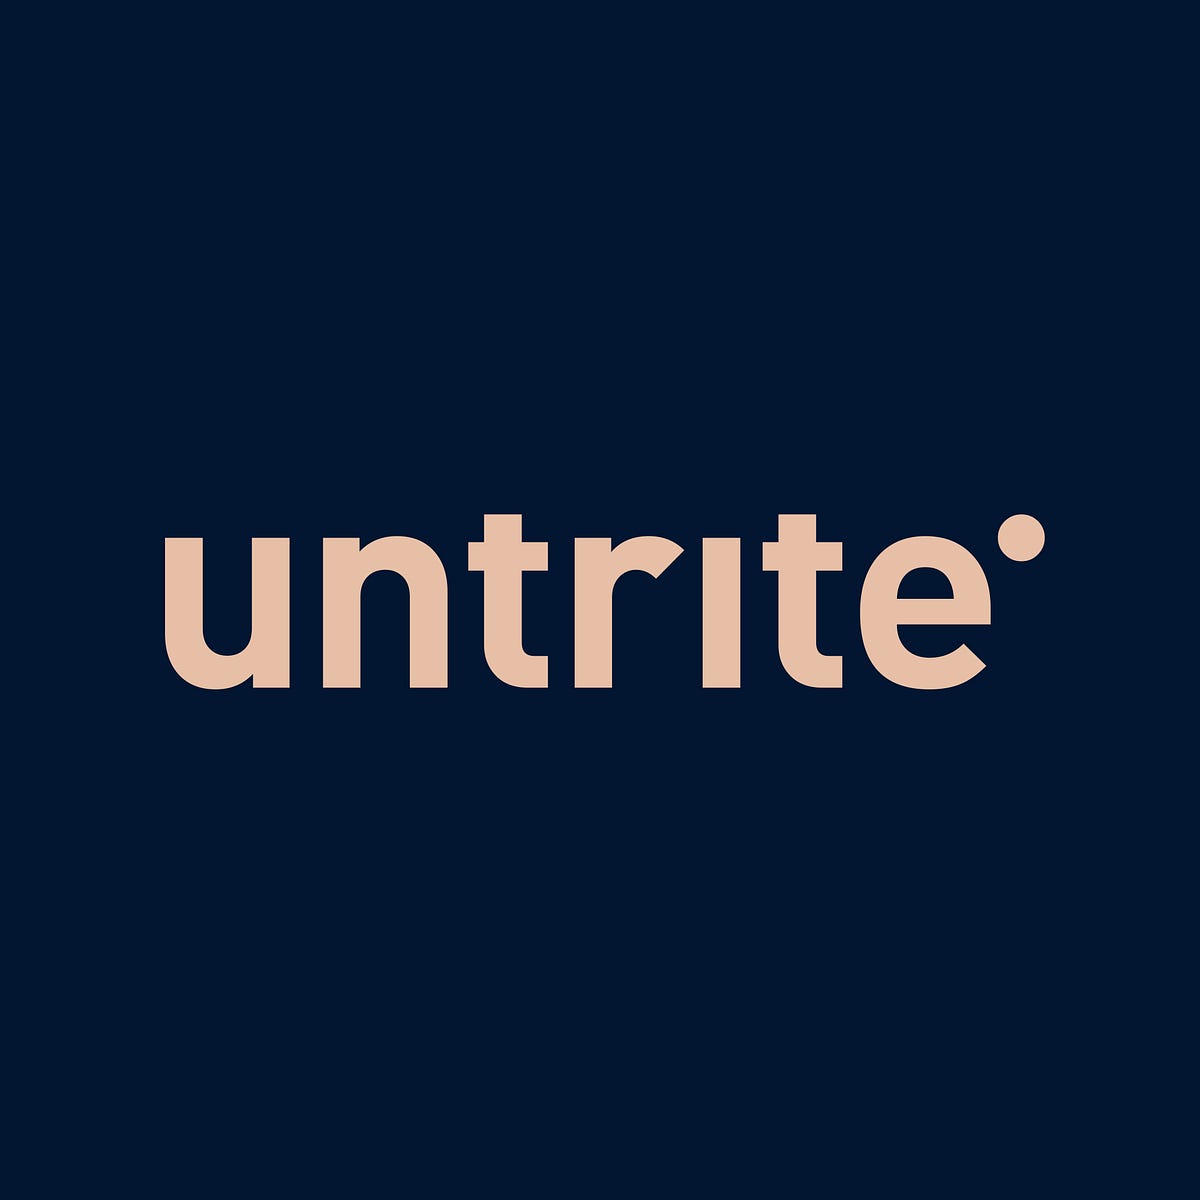 Untrite – Medium